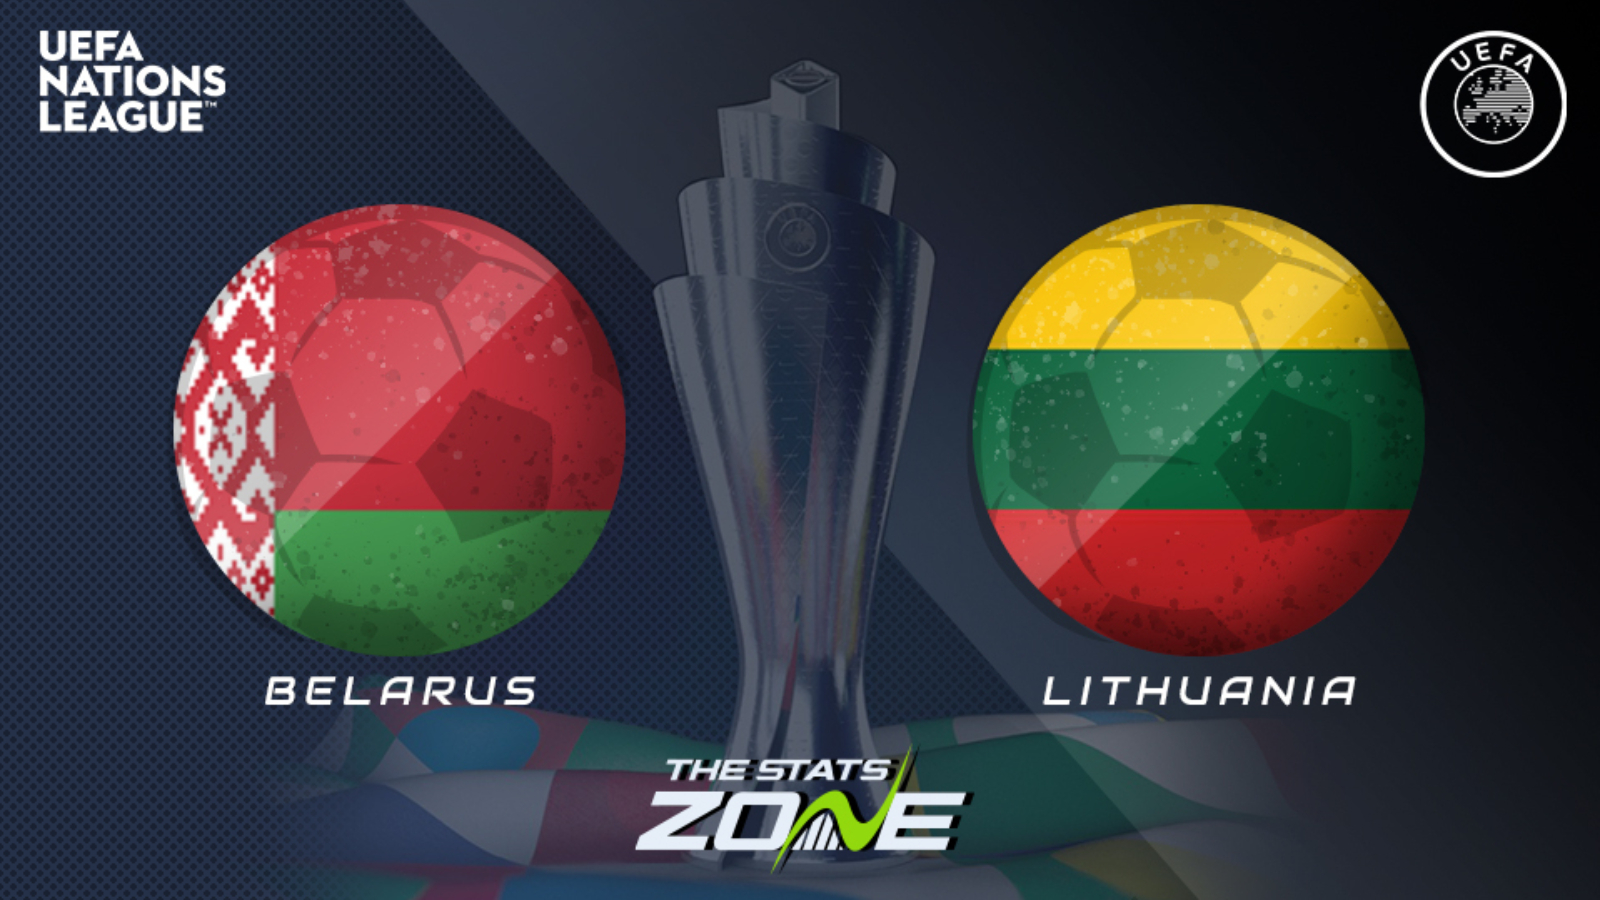 Lithuania a league